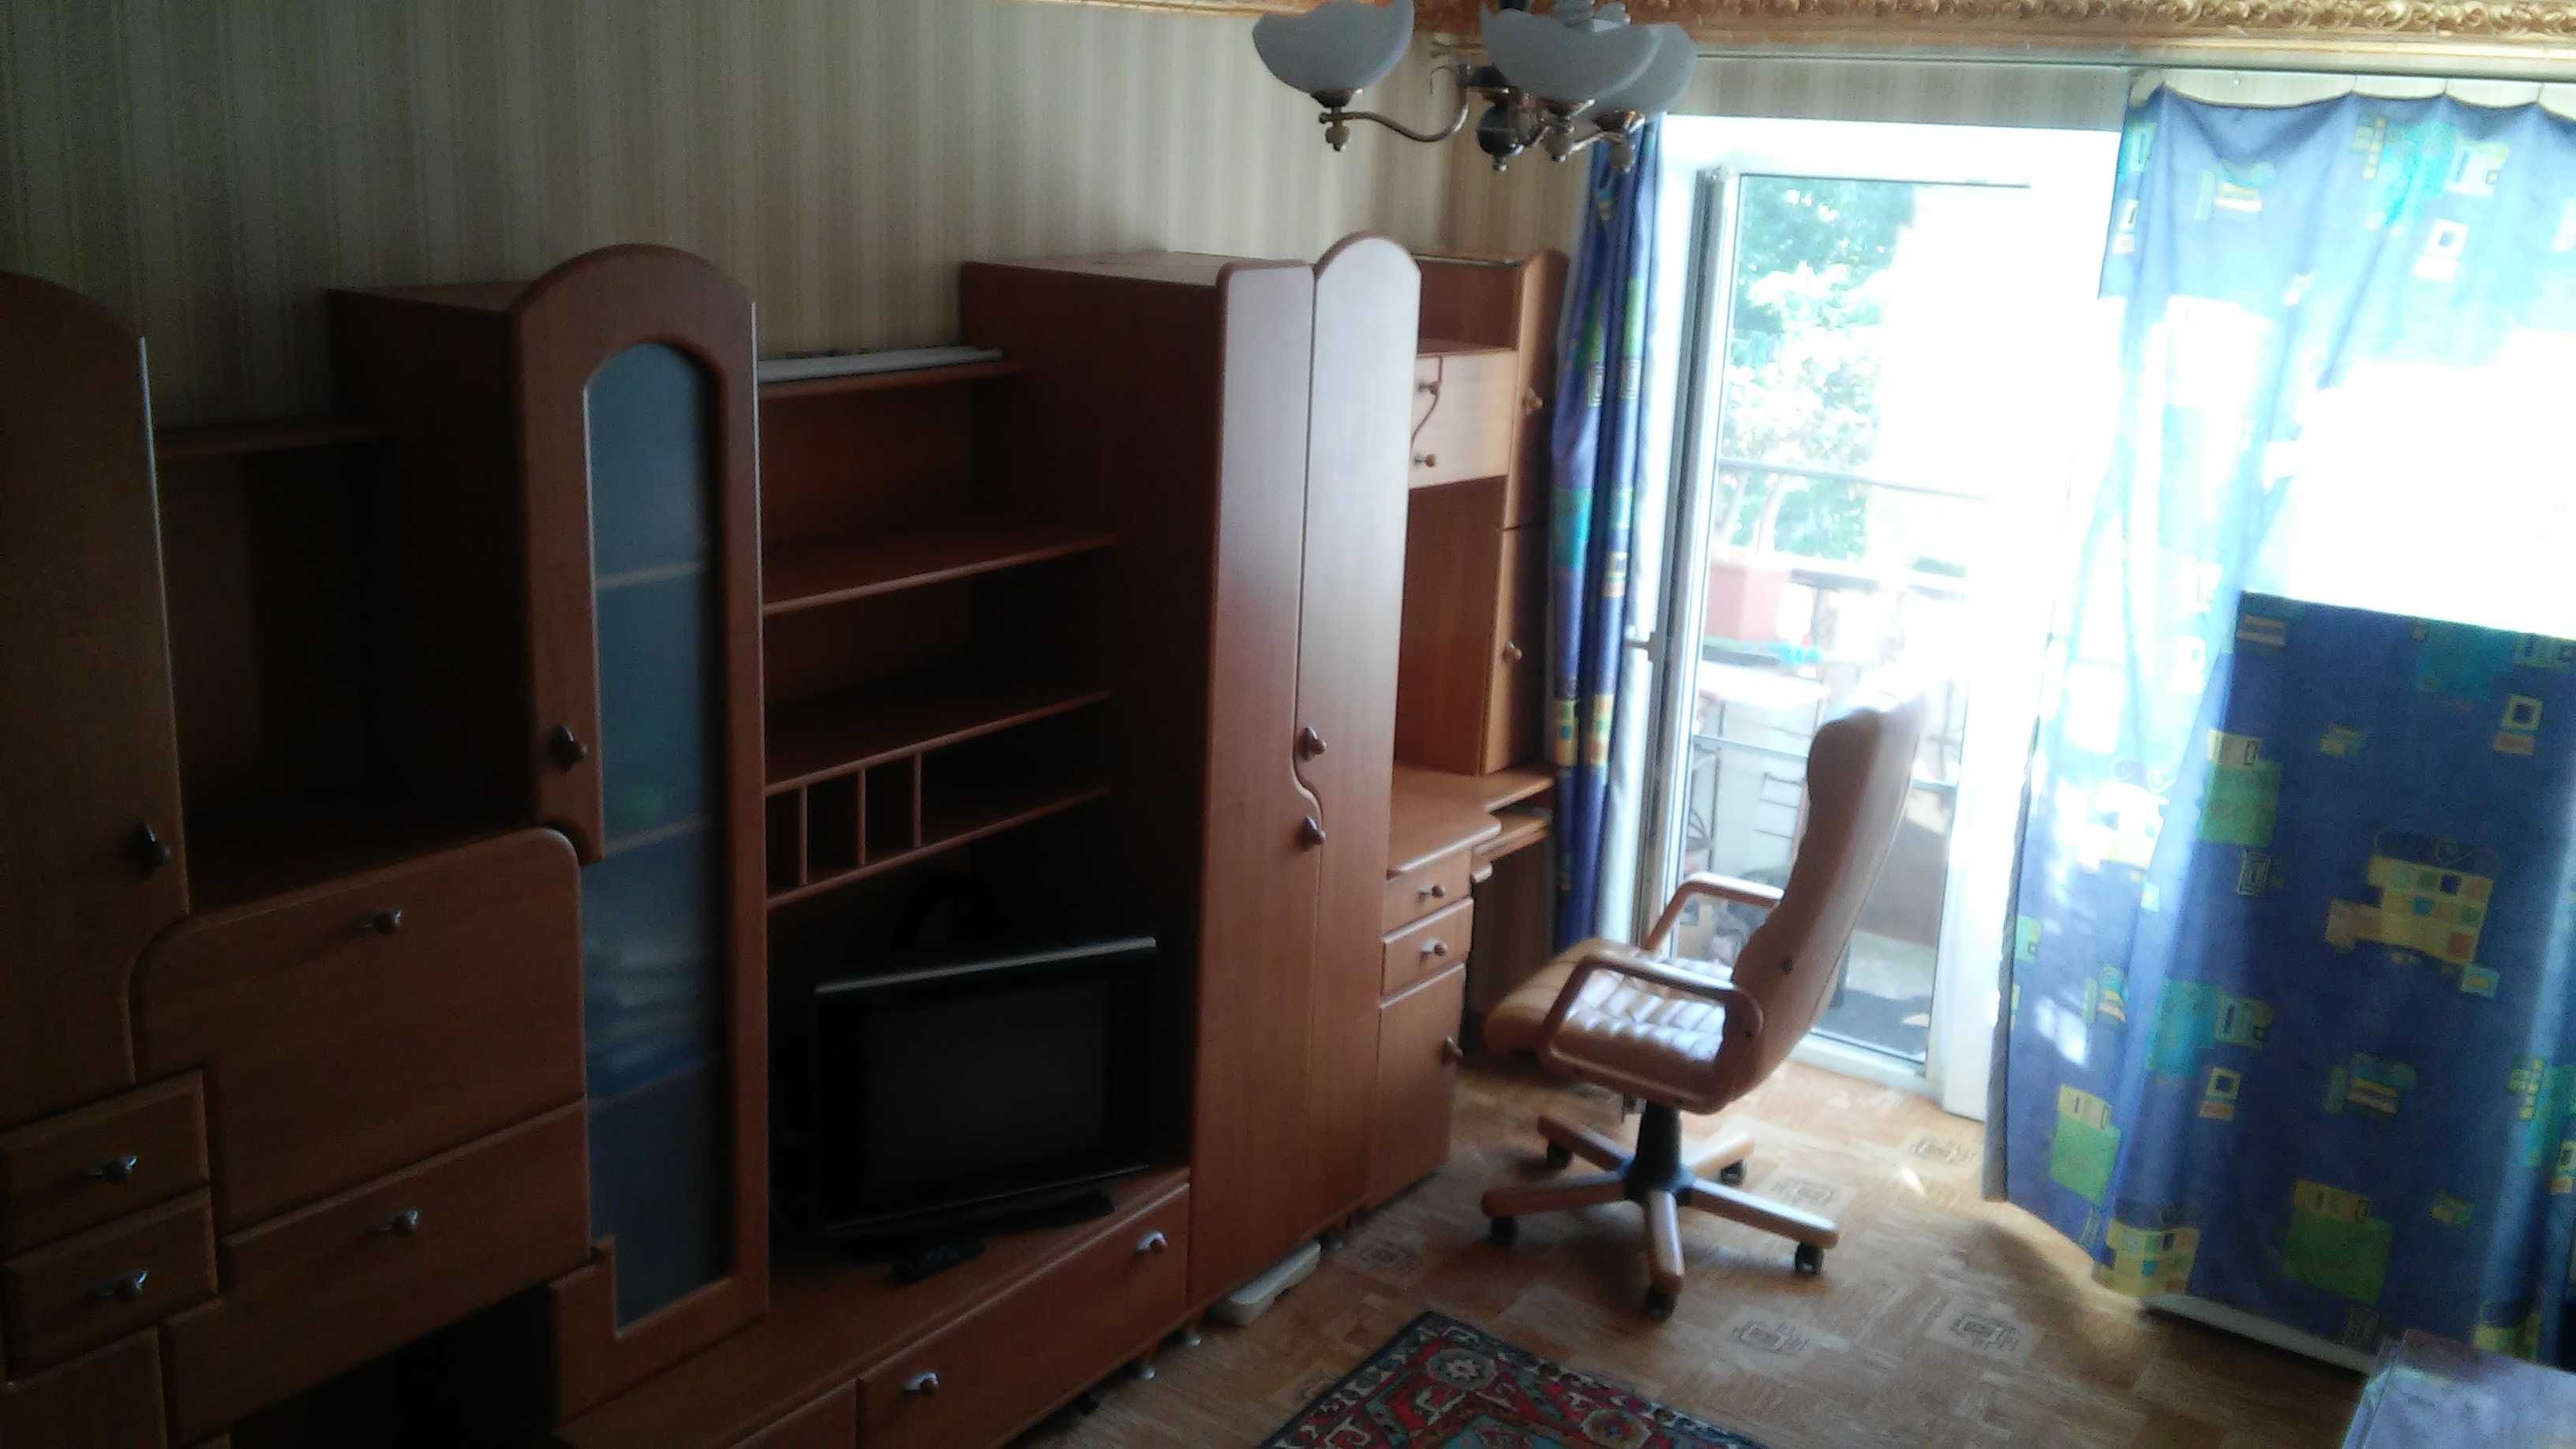 Квартира в Луганске 2 ком от хозяина, автономка на 50-лет, 39 м2